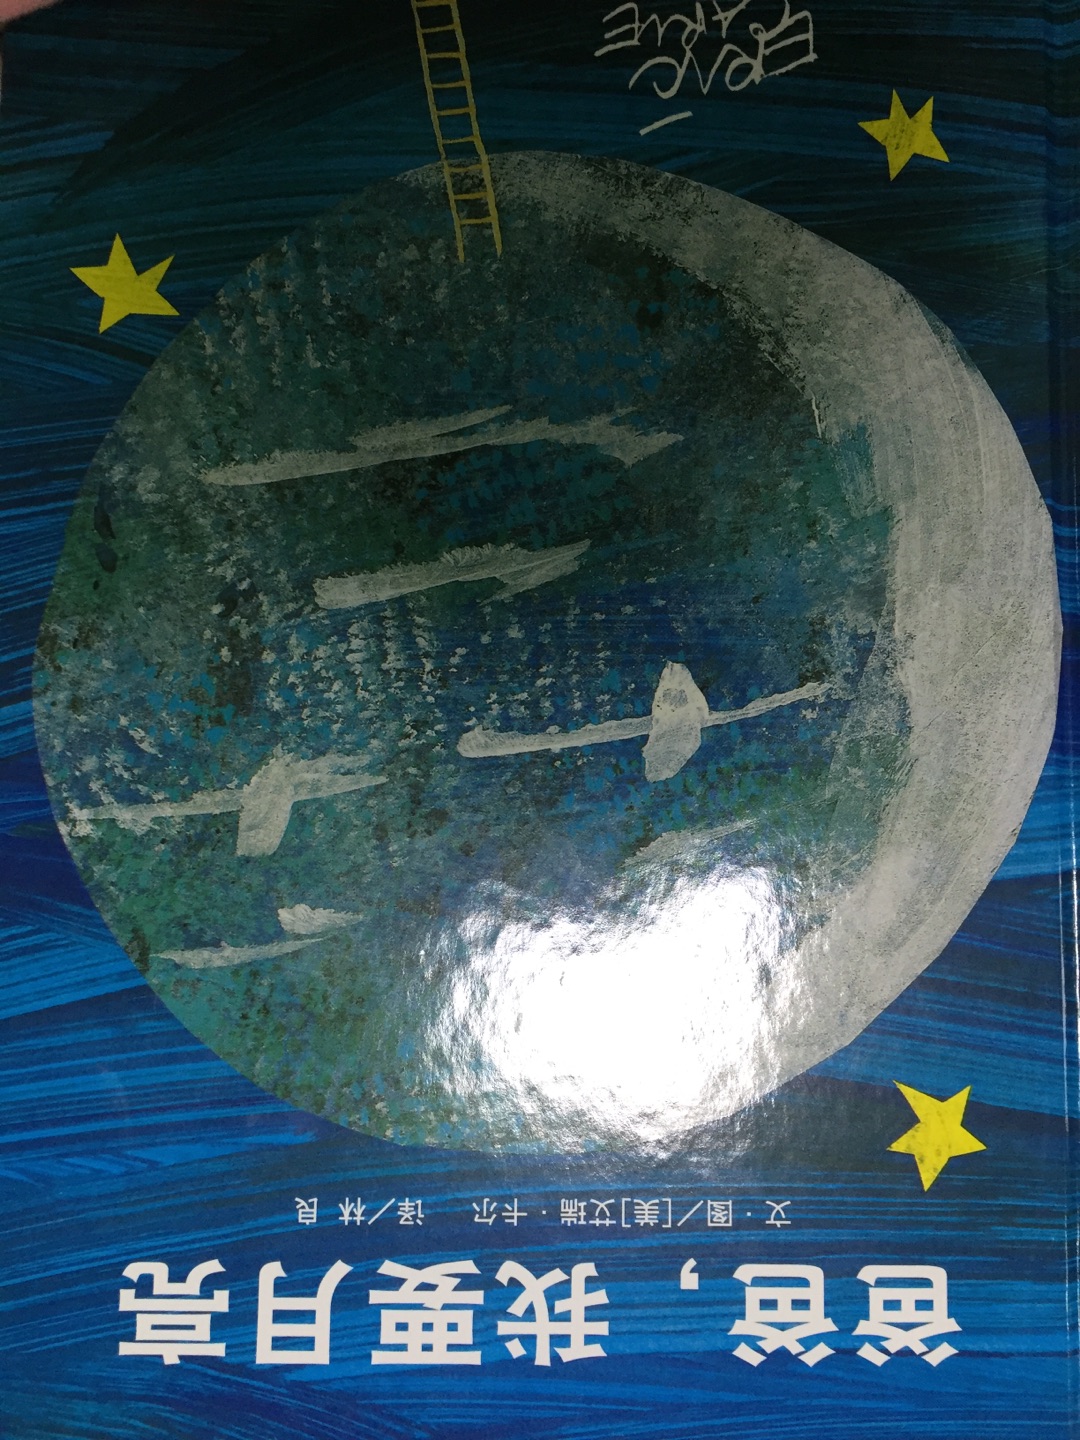 月亮主题，在中秋佳节读一读，非常适合了，孩子爱看。啦啦啦啦噜啦啦噜啦啦噜啦啦噜啦啦噜啦啦噜啦啦噜啦啦的声音